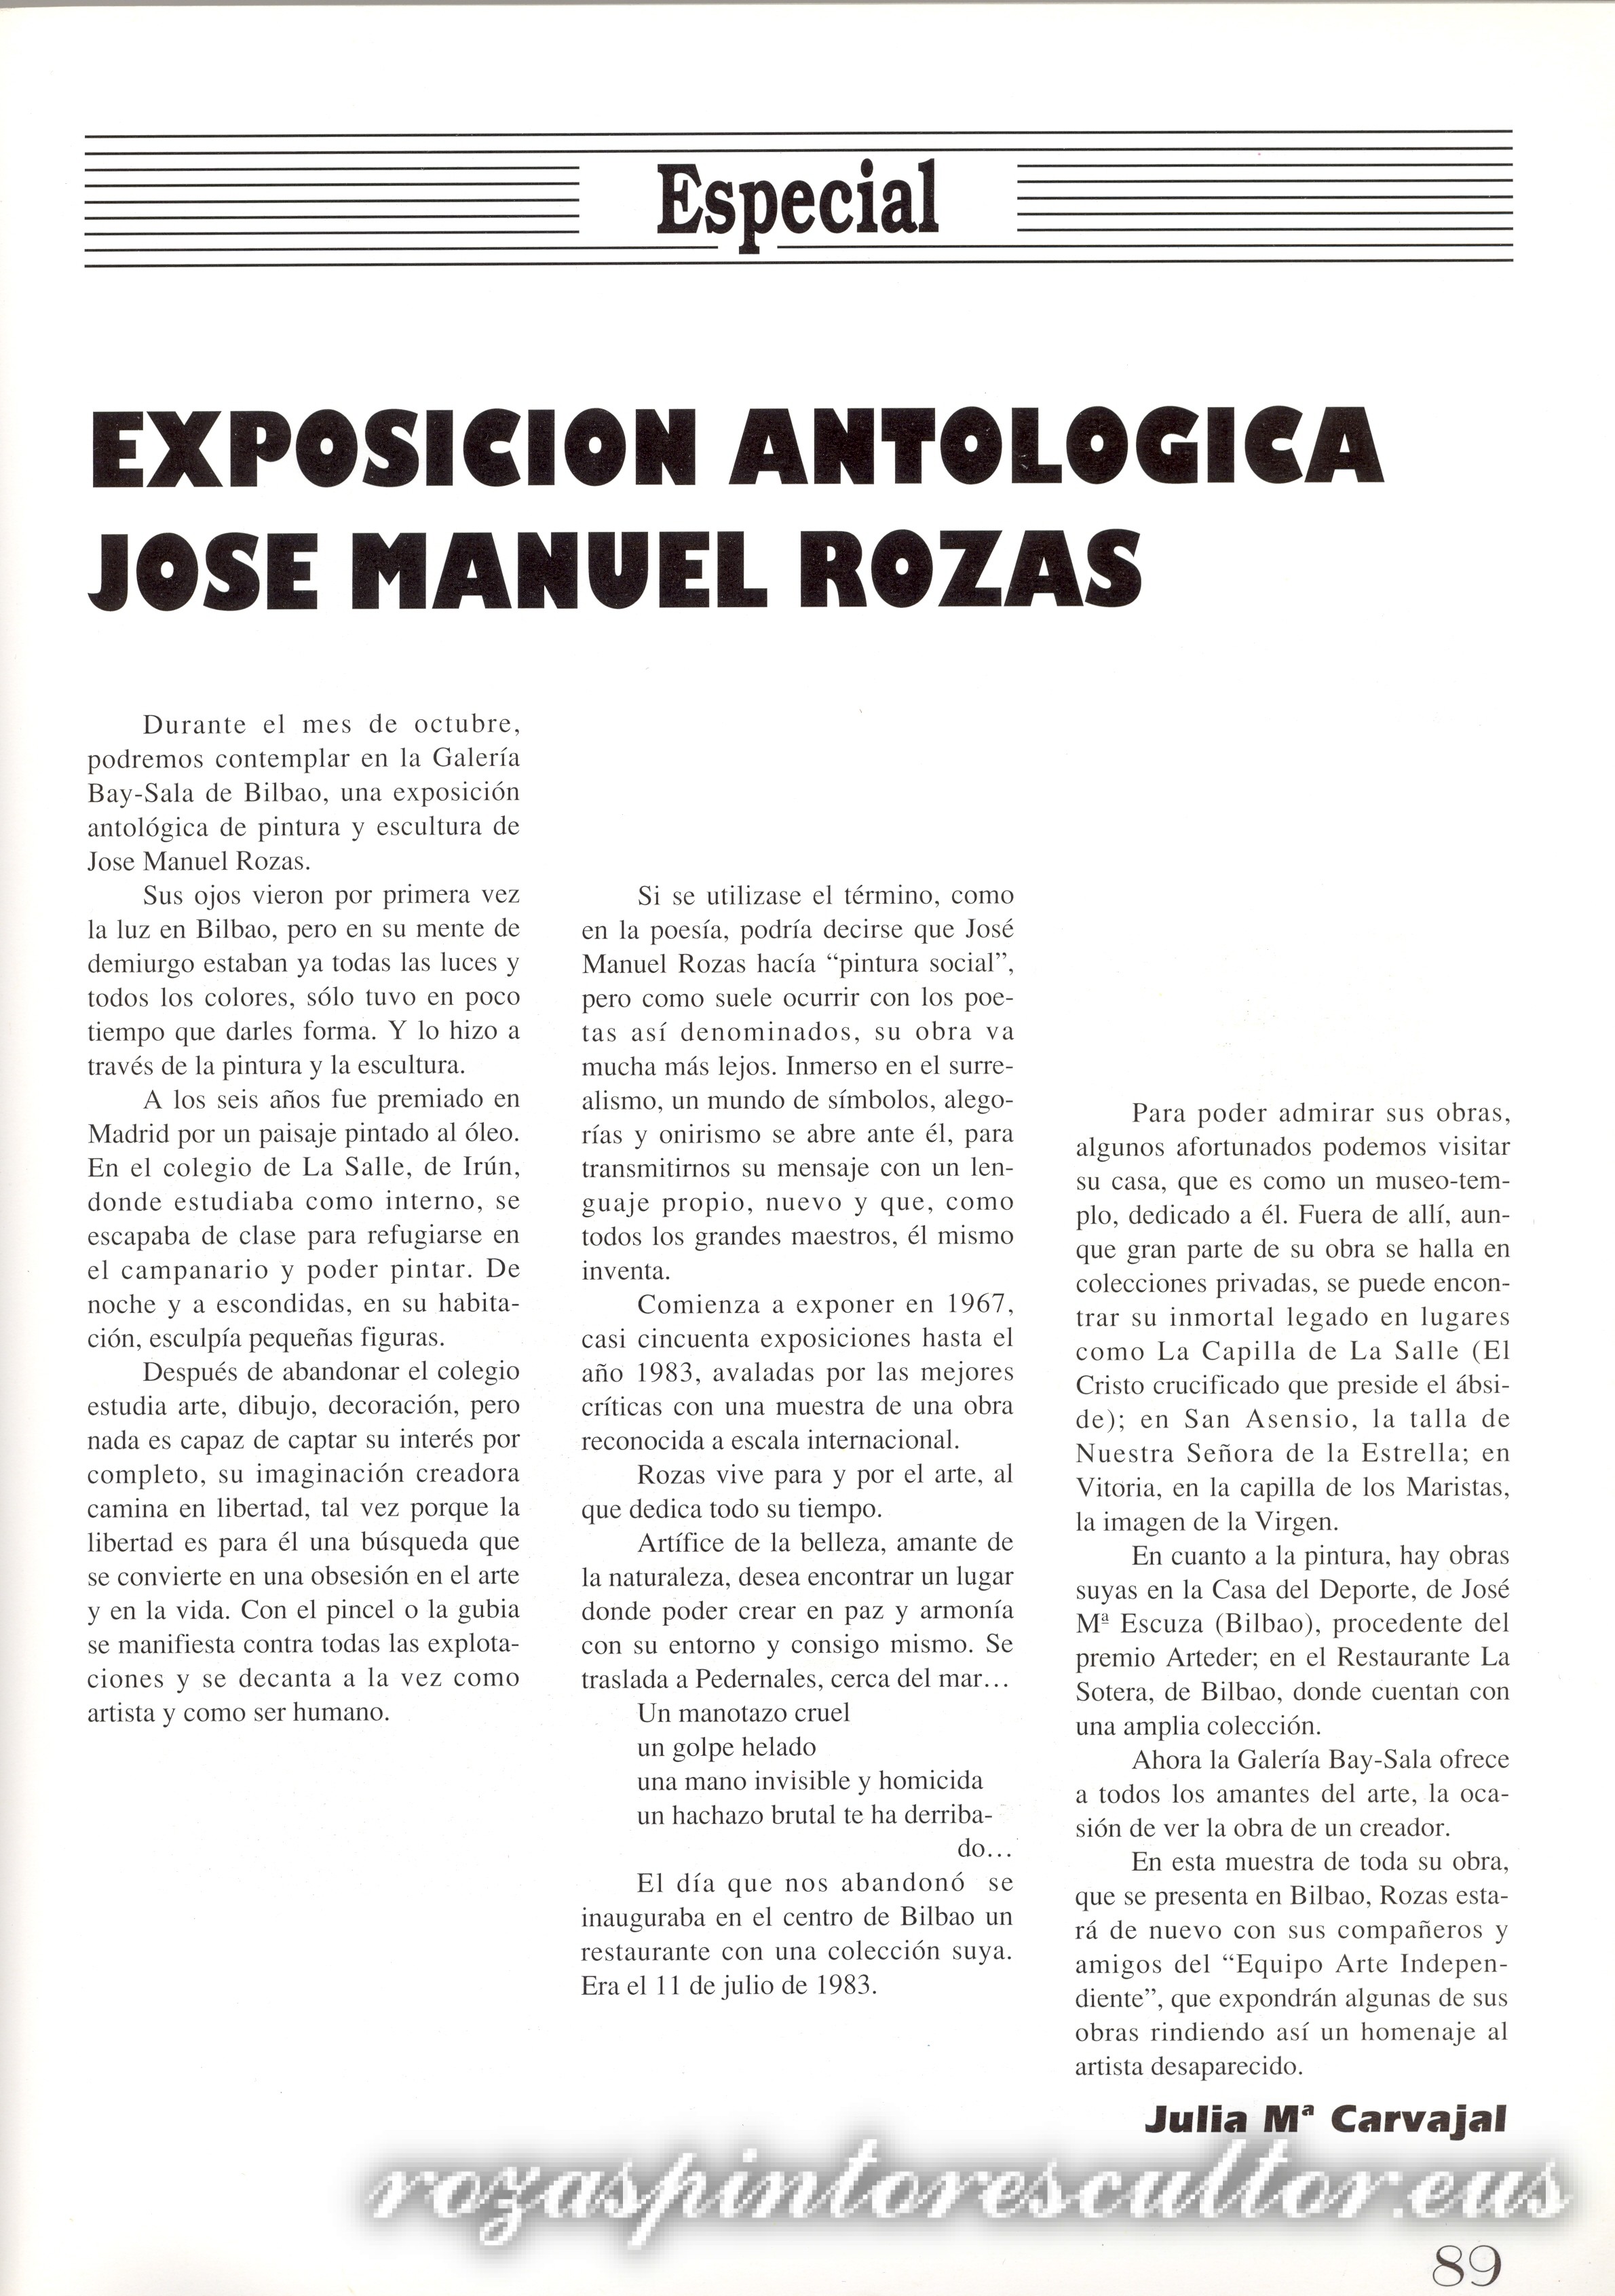 1992 Buenas Noticias – Jose Manuel Rozas Erakusketa antologikoa